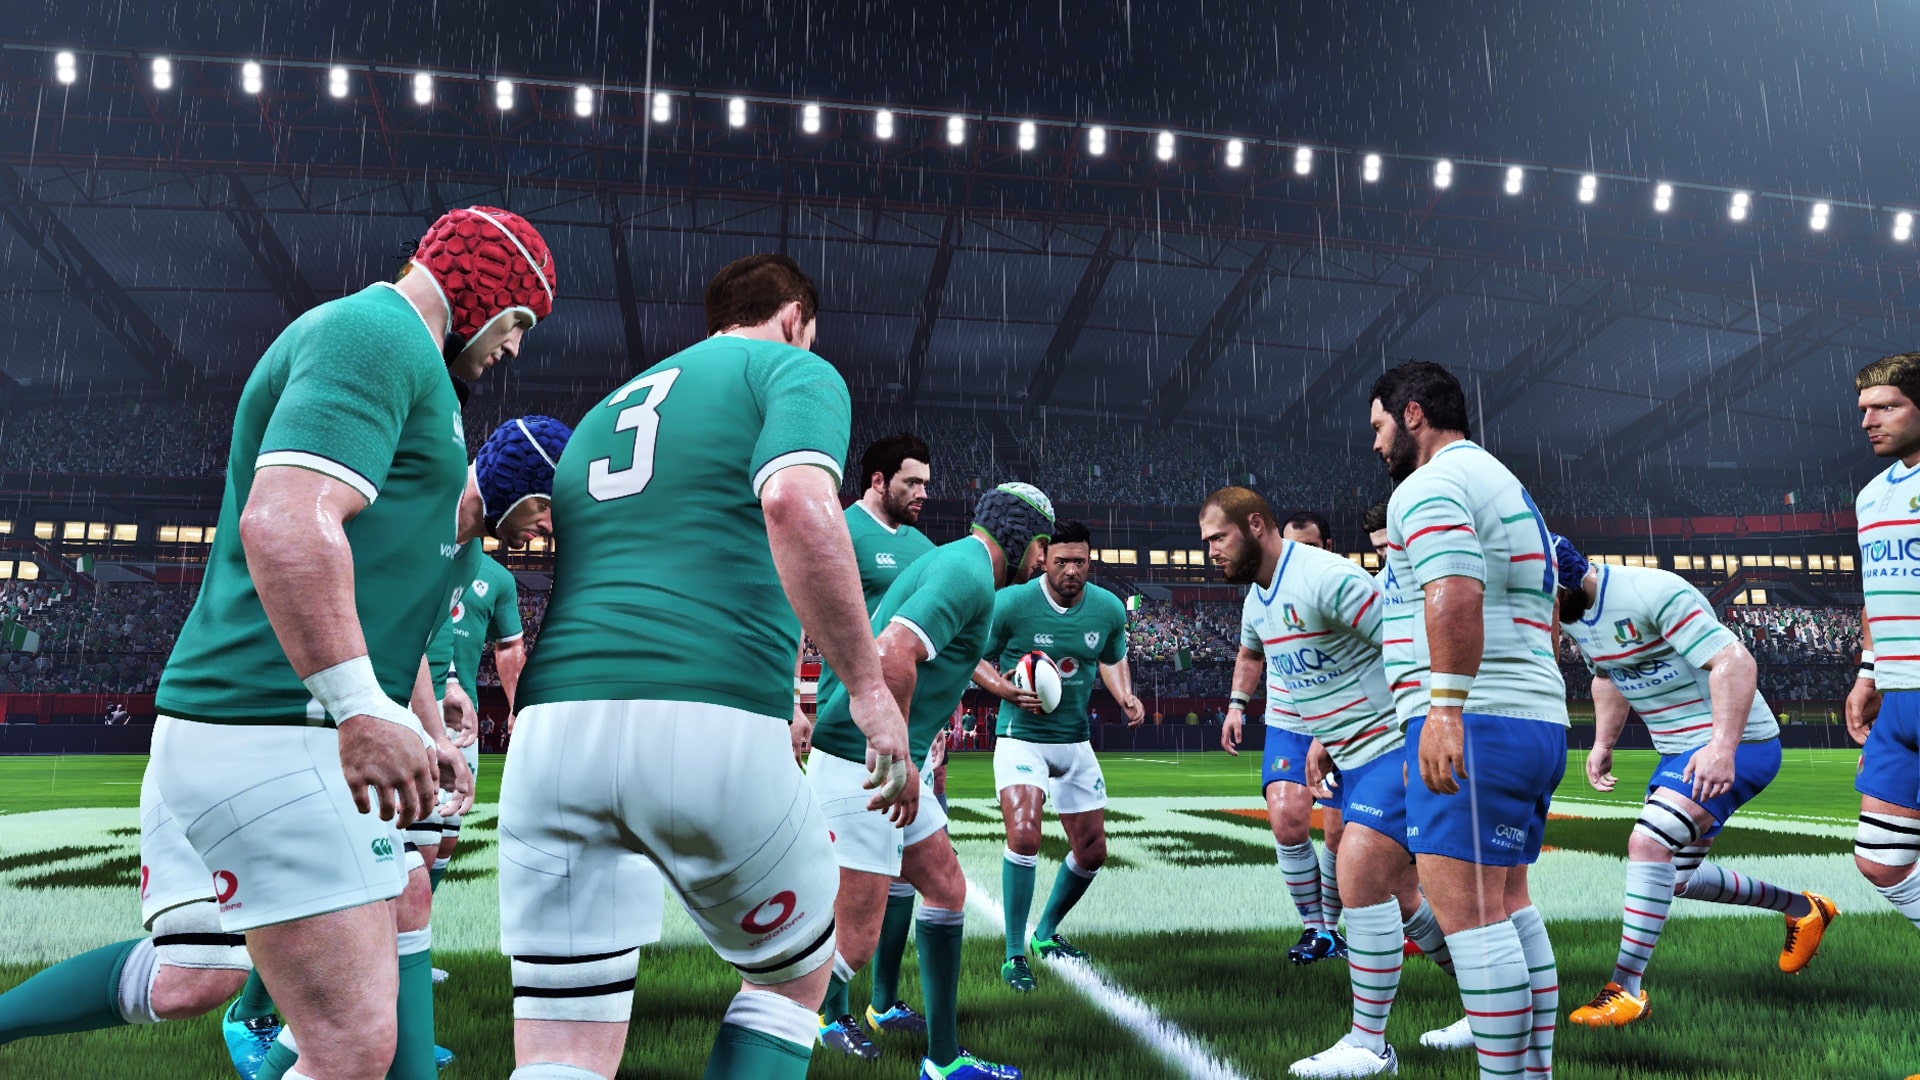 Rugby 20 - screenshot 3